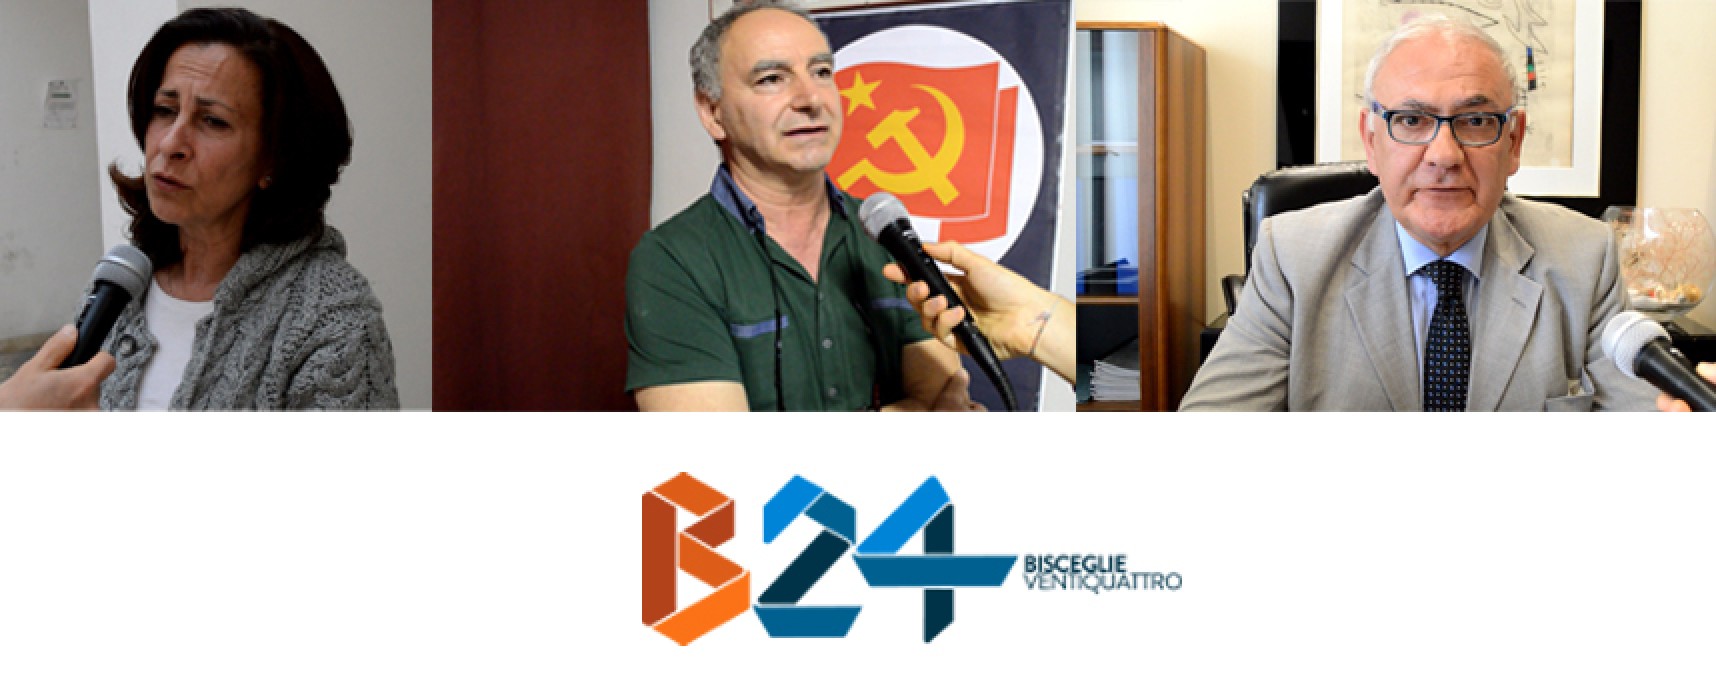 Elezioni regionali, intervista ai candidati consiglieri Sasso, Arcieri e Sannicandro / VIDEO